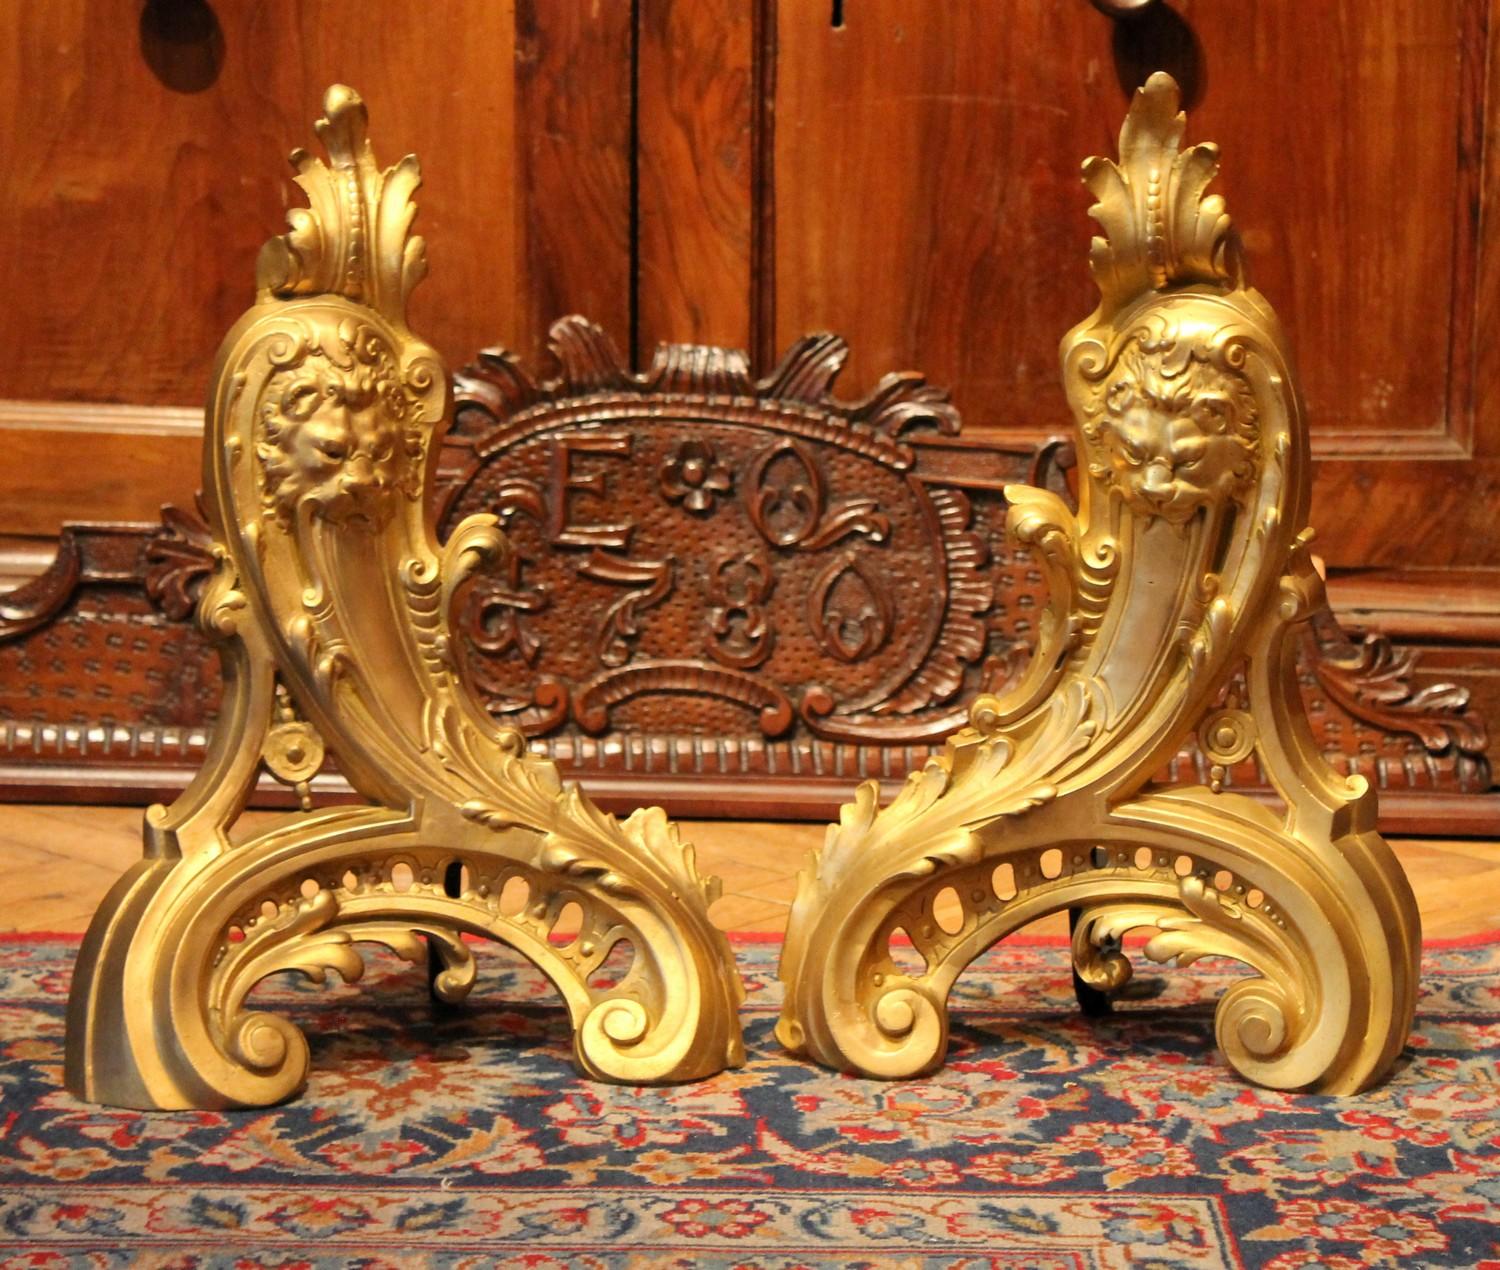 Beeindruckendes Paar fein ziselierter vergoldeter Bronze-Andirons im französischen Louis XV-Stil. Diese Rocaille-Ormolu-Schmuckstücke sind äußerst dekorativ und zeigen jeweils einen reliefierten Löwenkopf, der von reichem Rokoko-Dekor wie